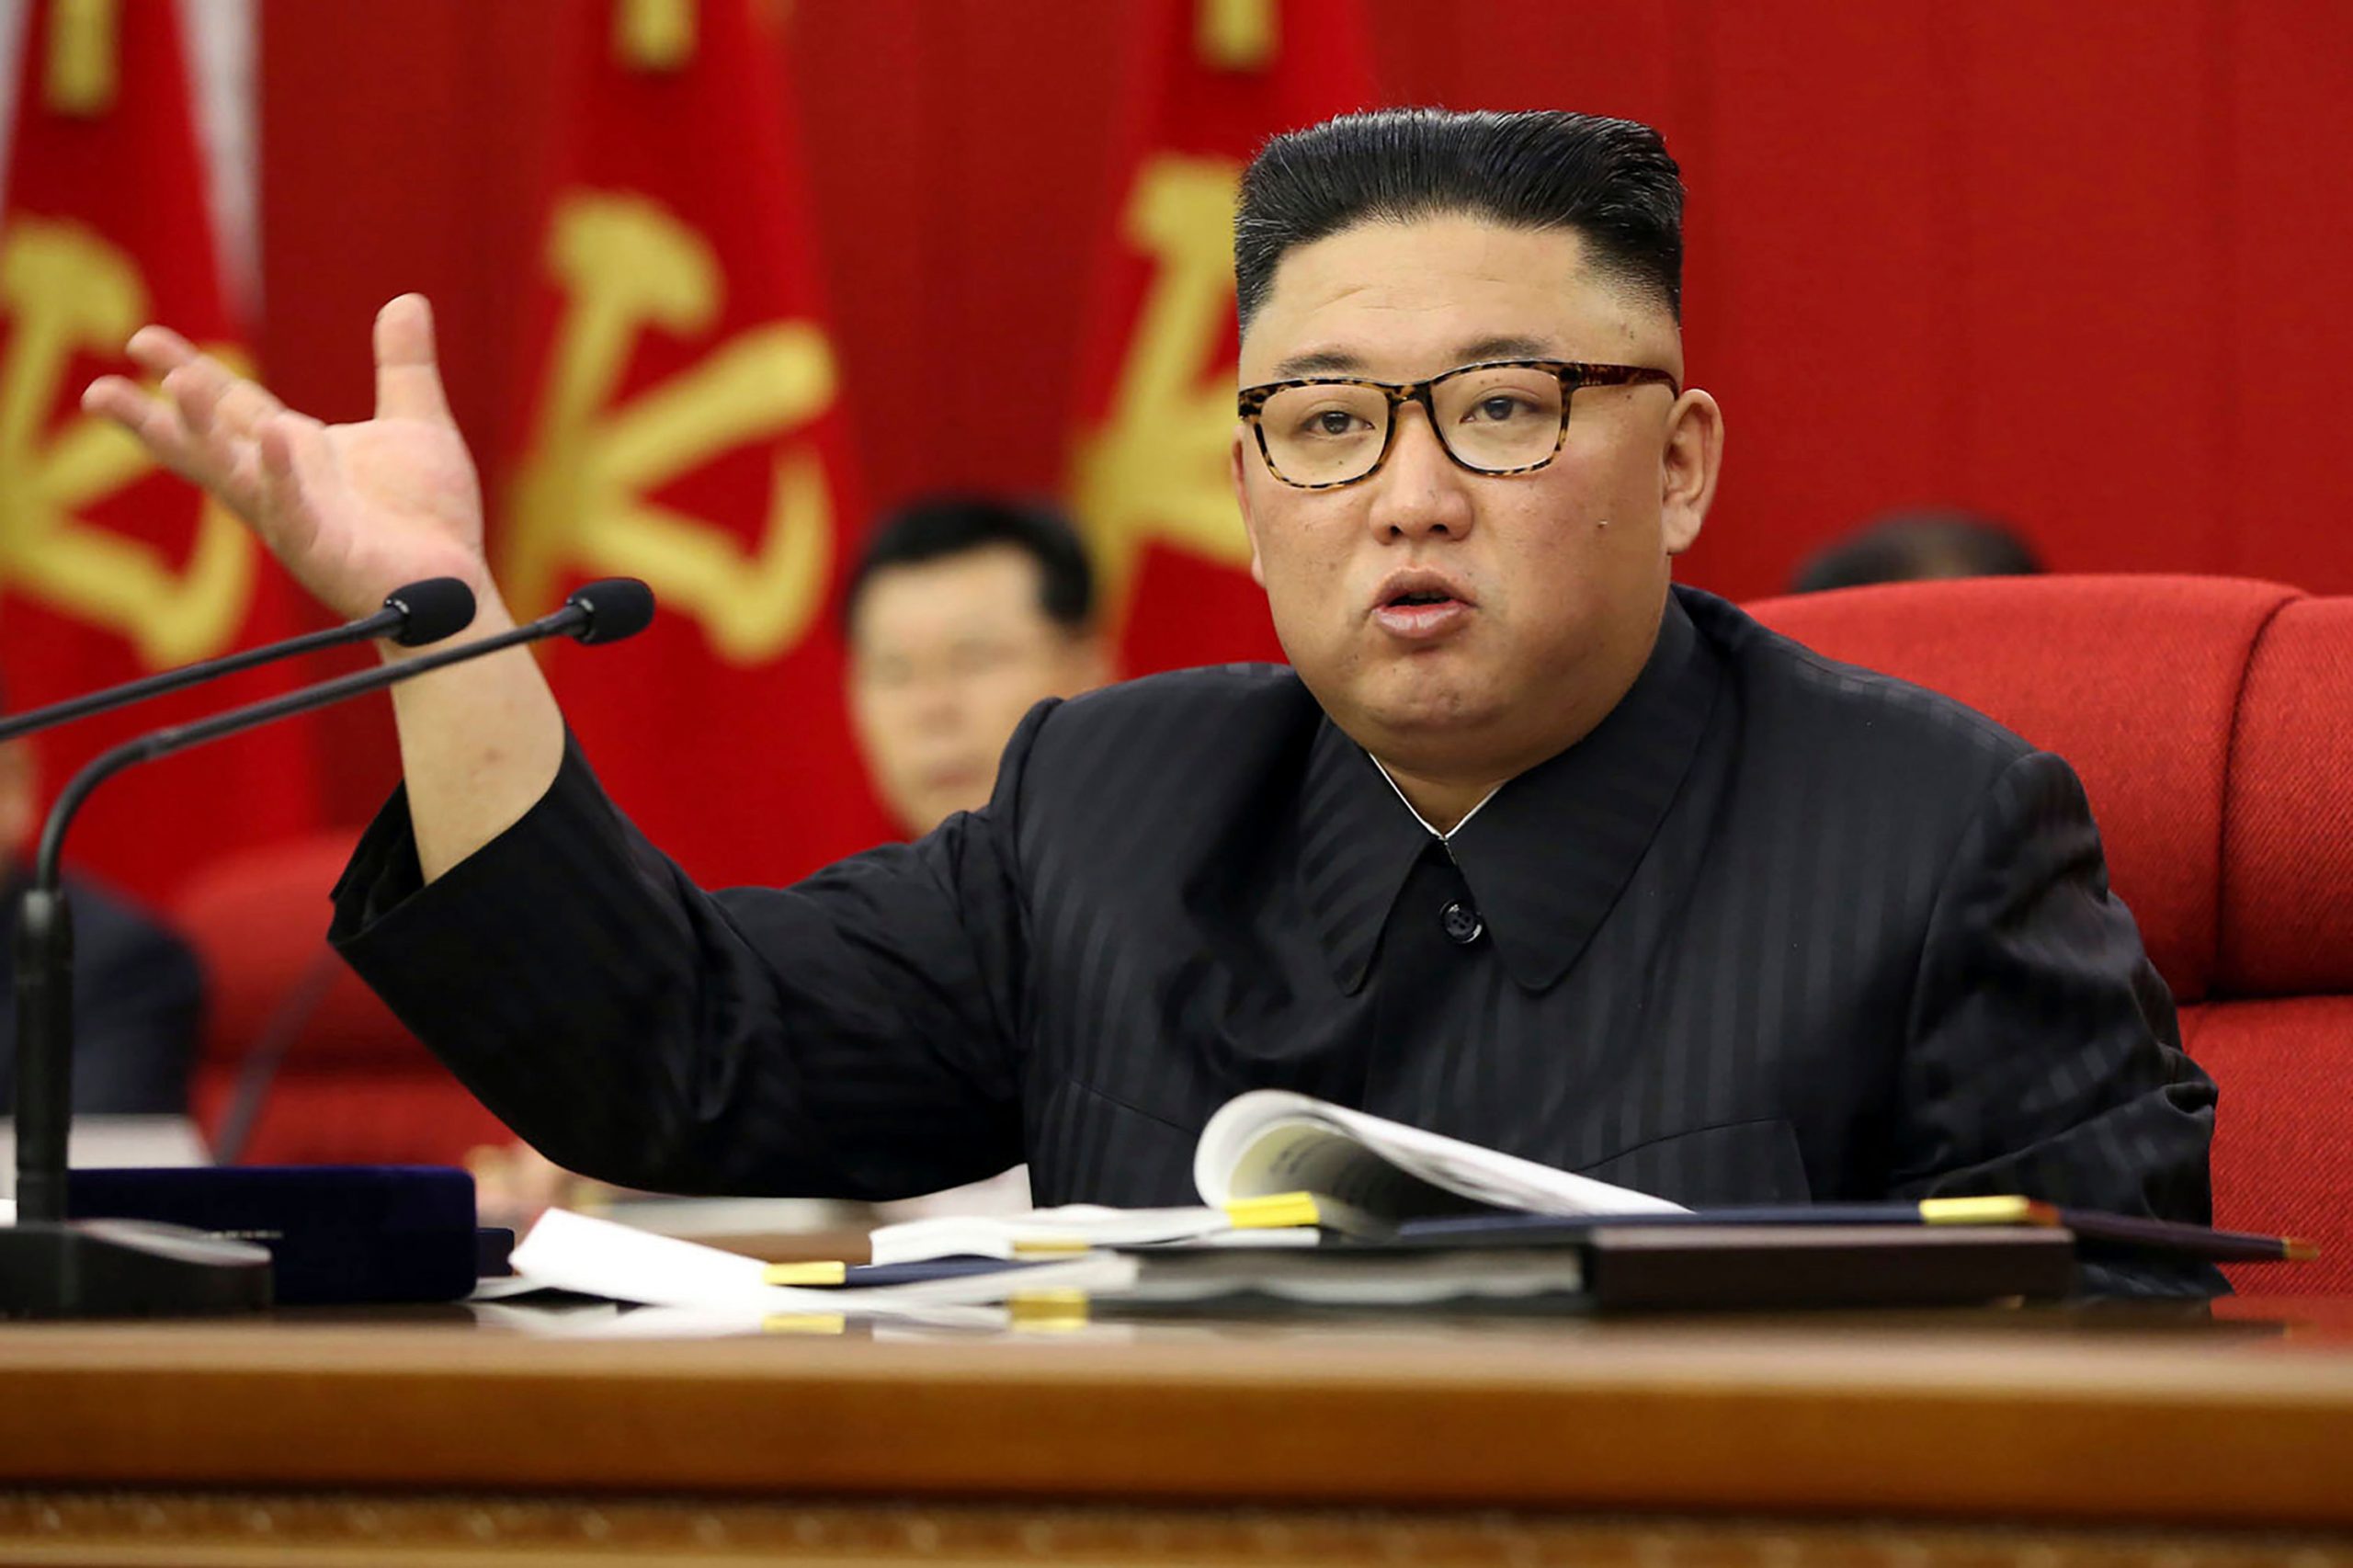 Kim Jong Un reshuffles North Korean senior officials amid great crisis: Reports